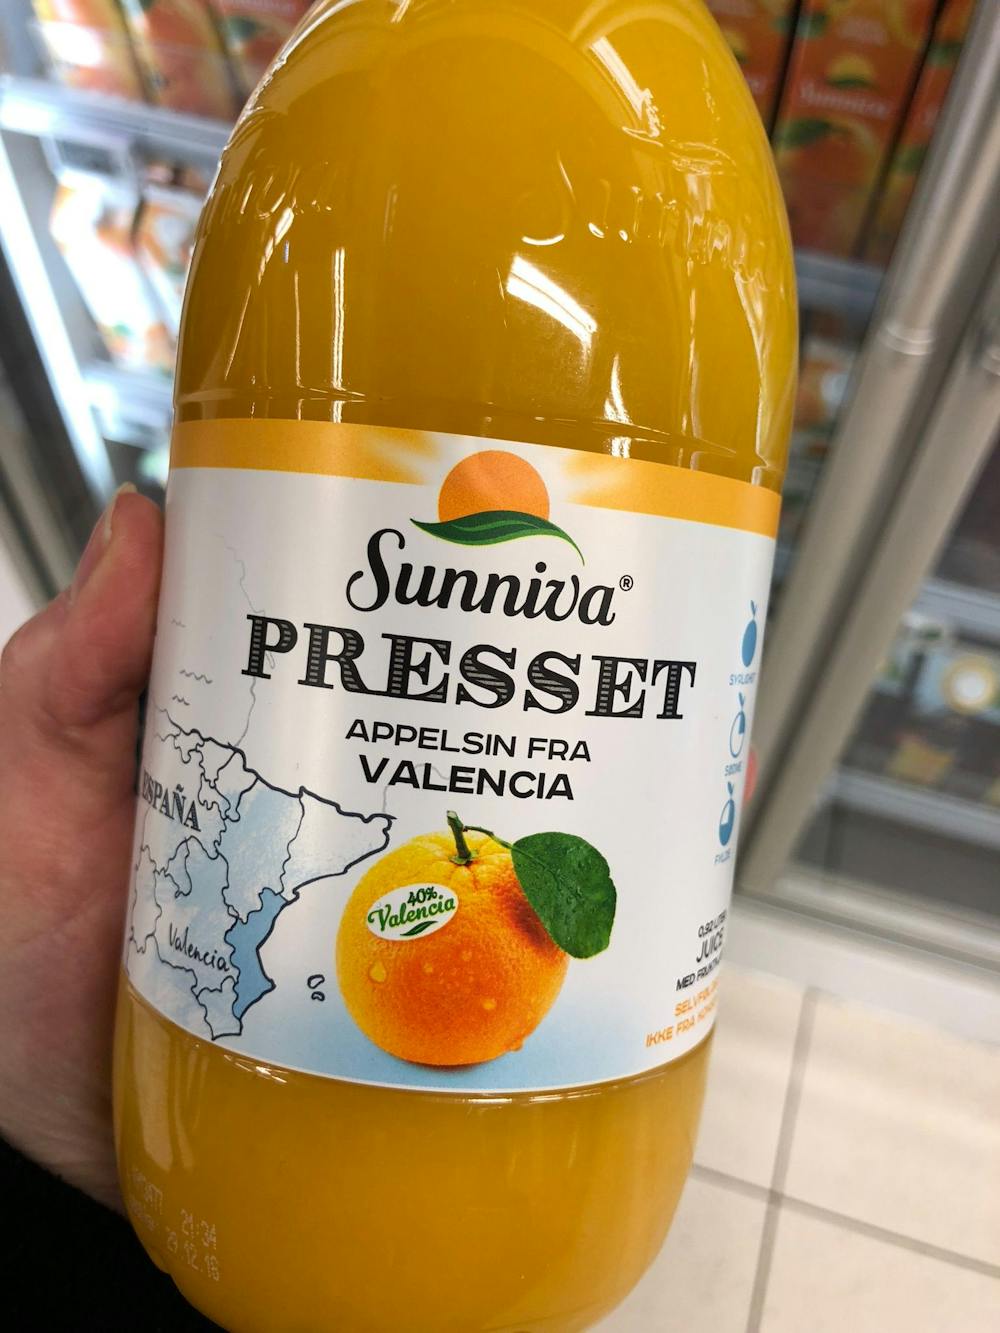 Presset appelsin fra valencia, Sunniva